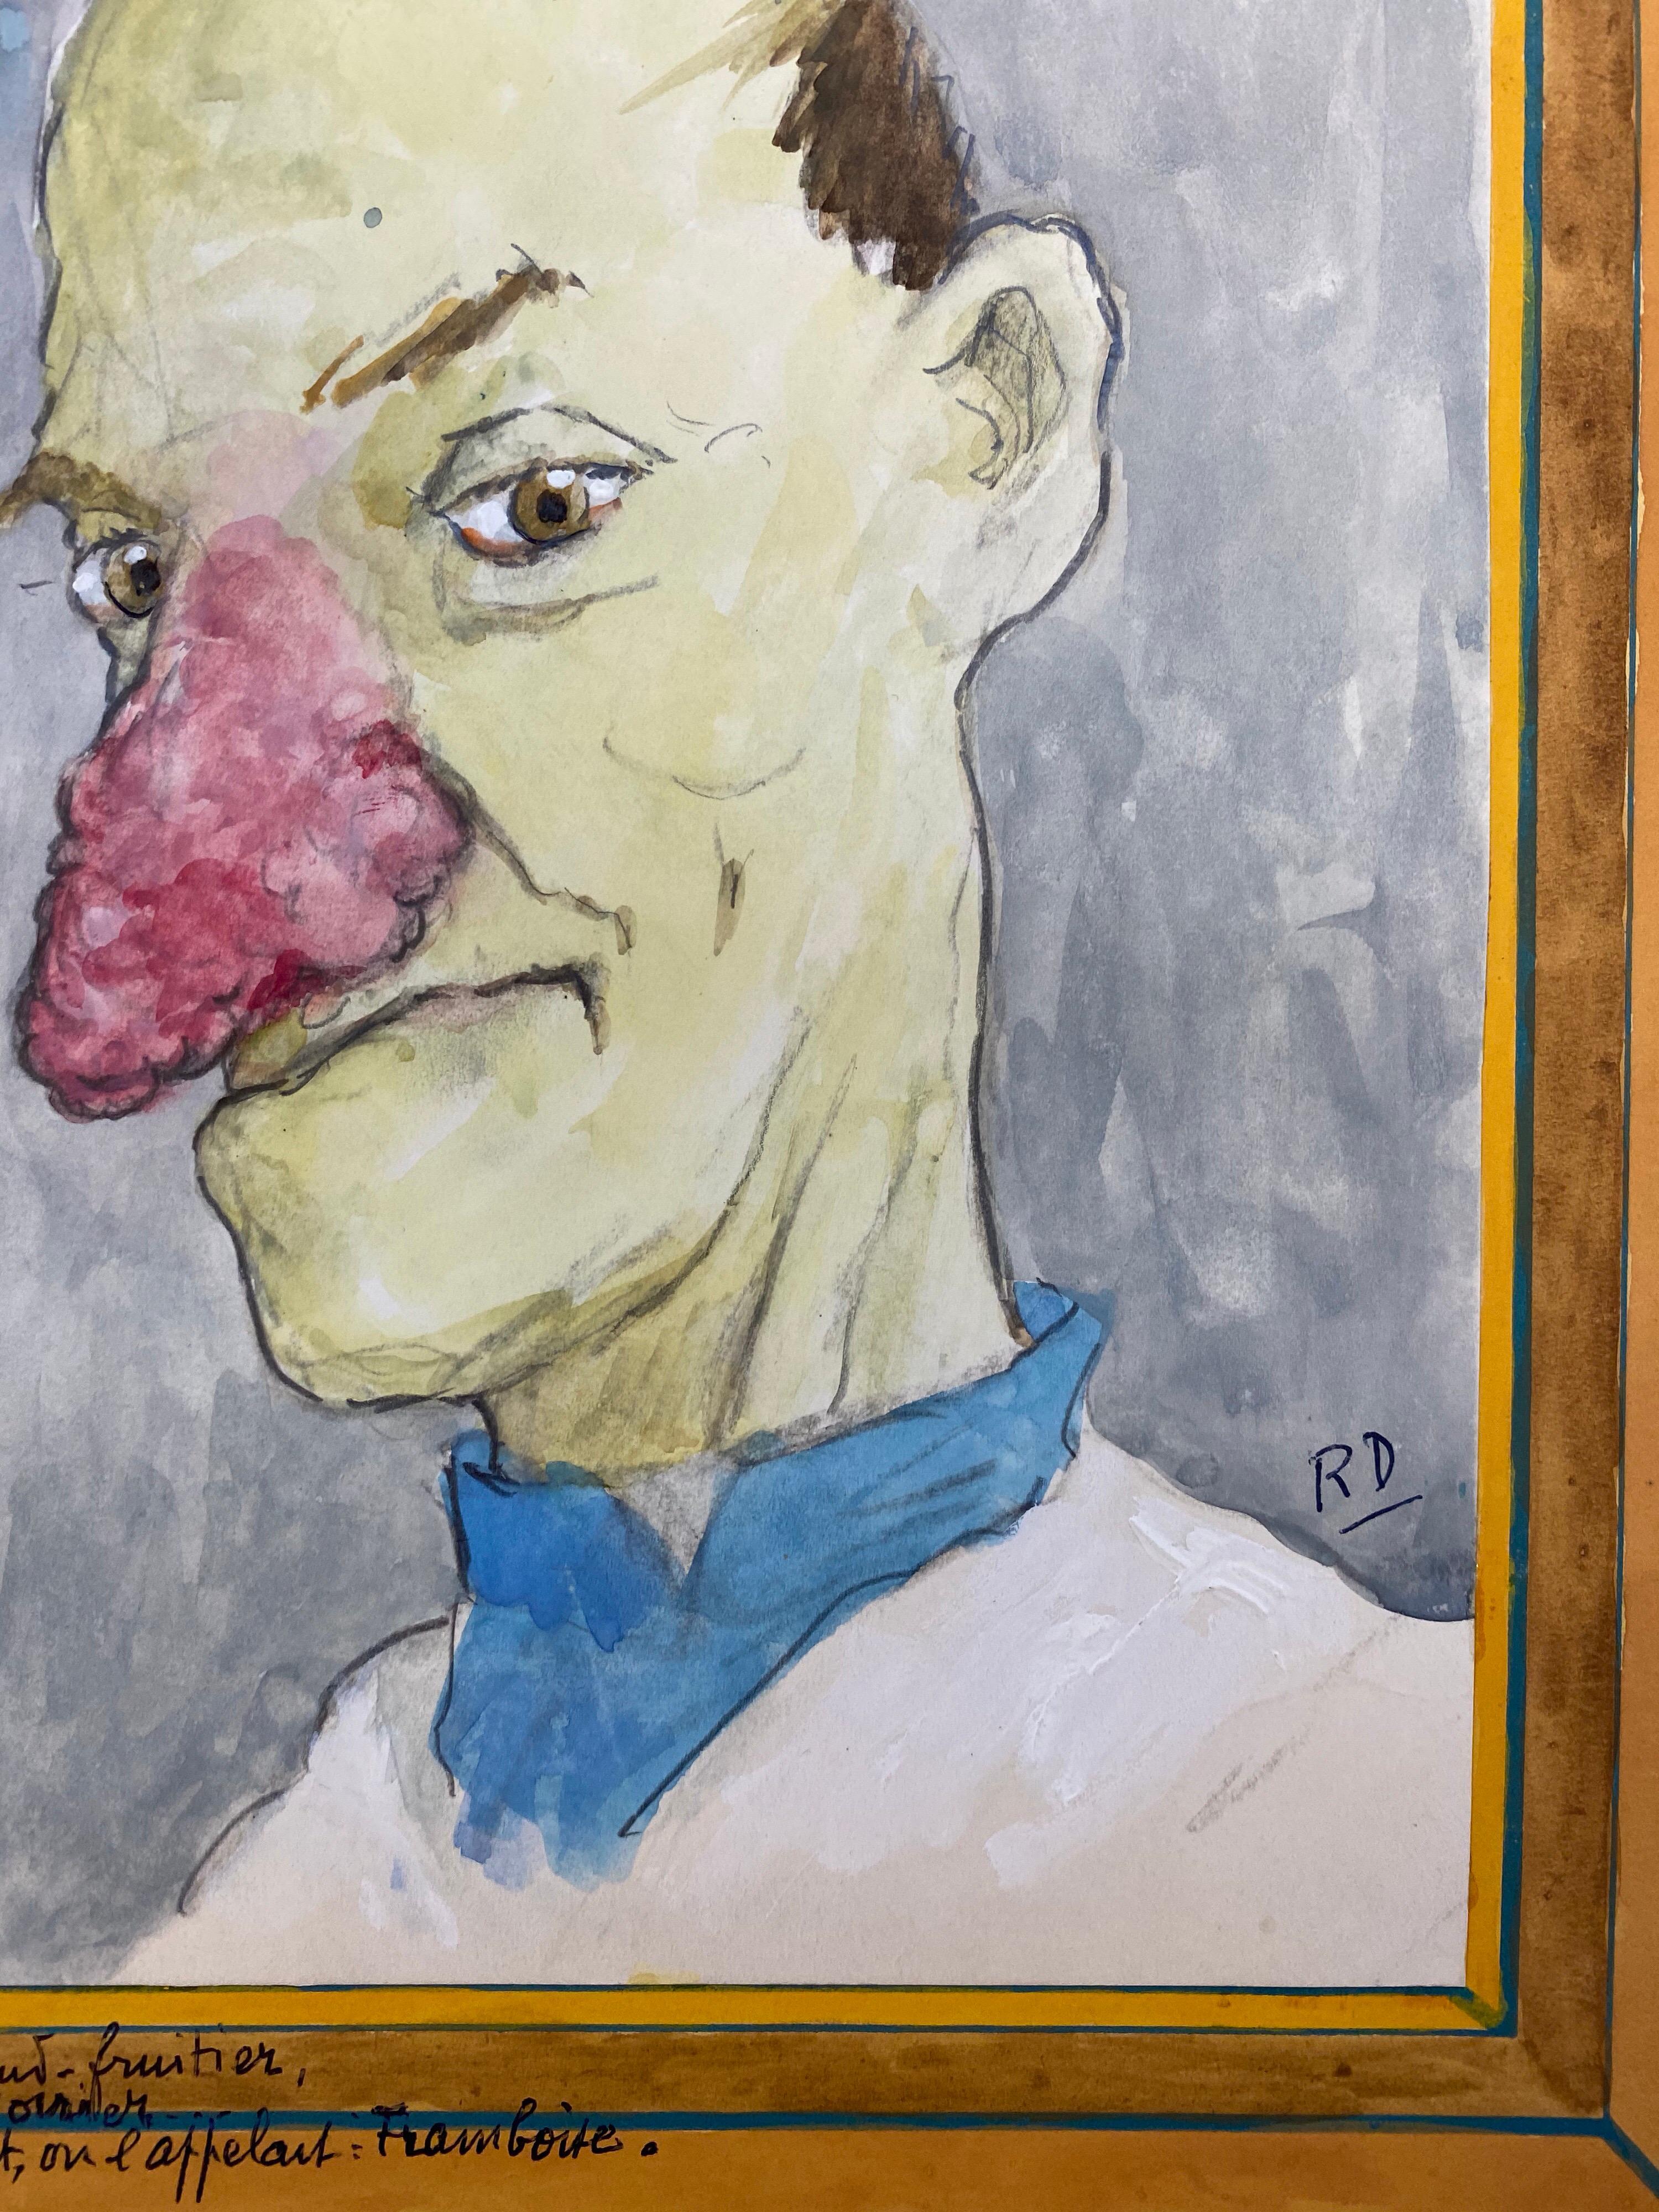 caricature nose